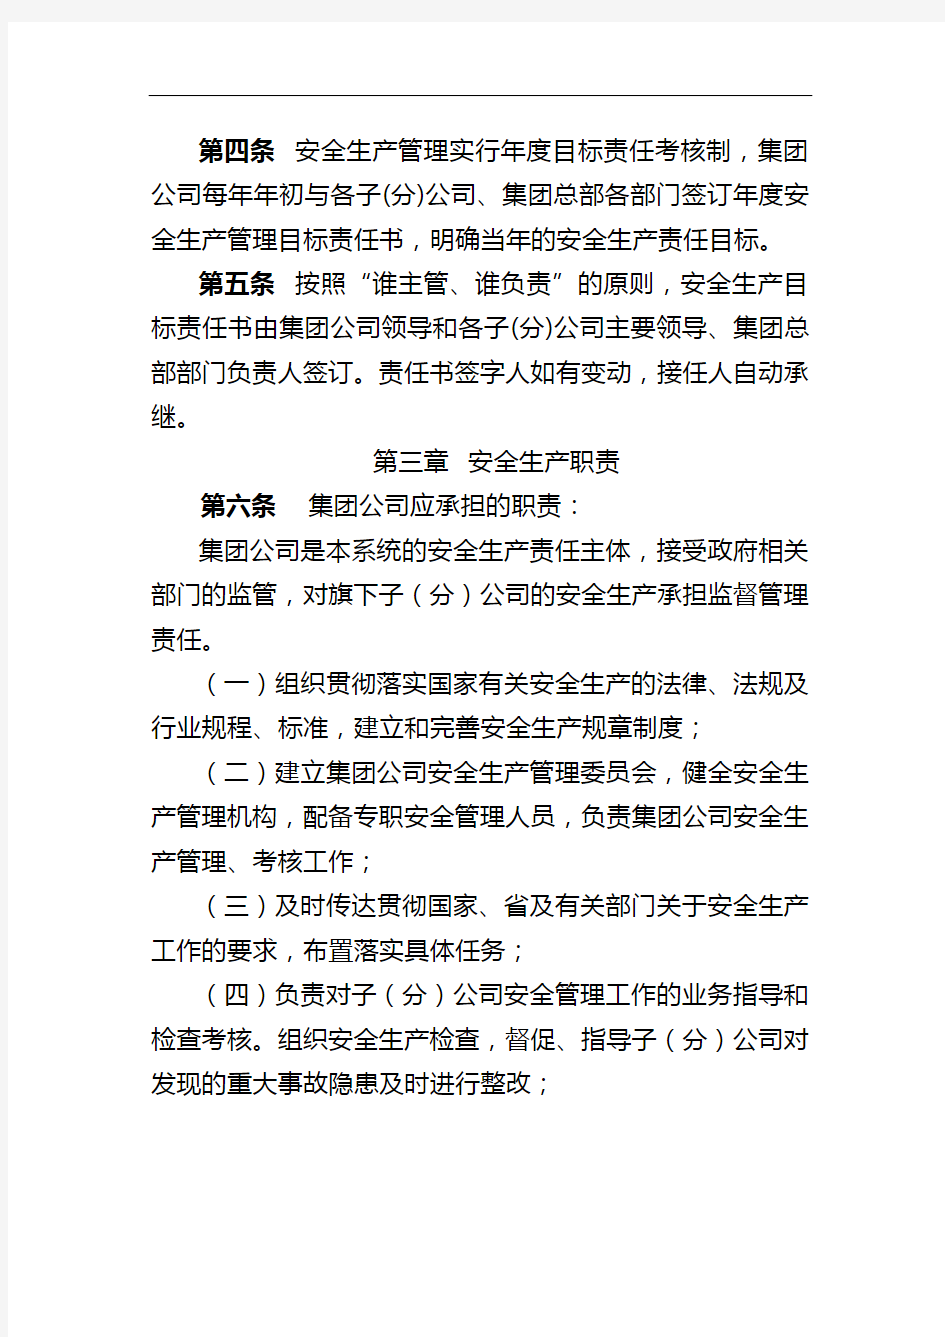 浙江省交通投资集团有限公司安全生产管理目标考核办法(2010年版